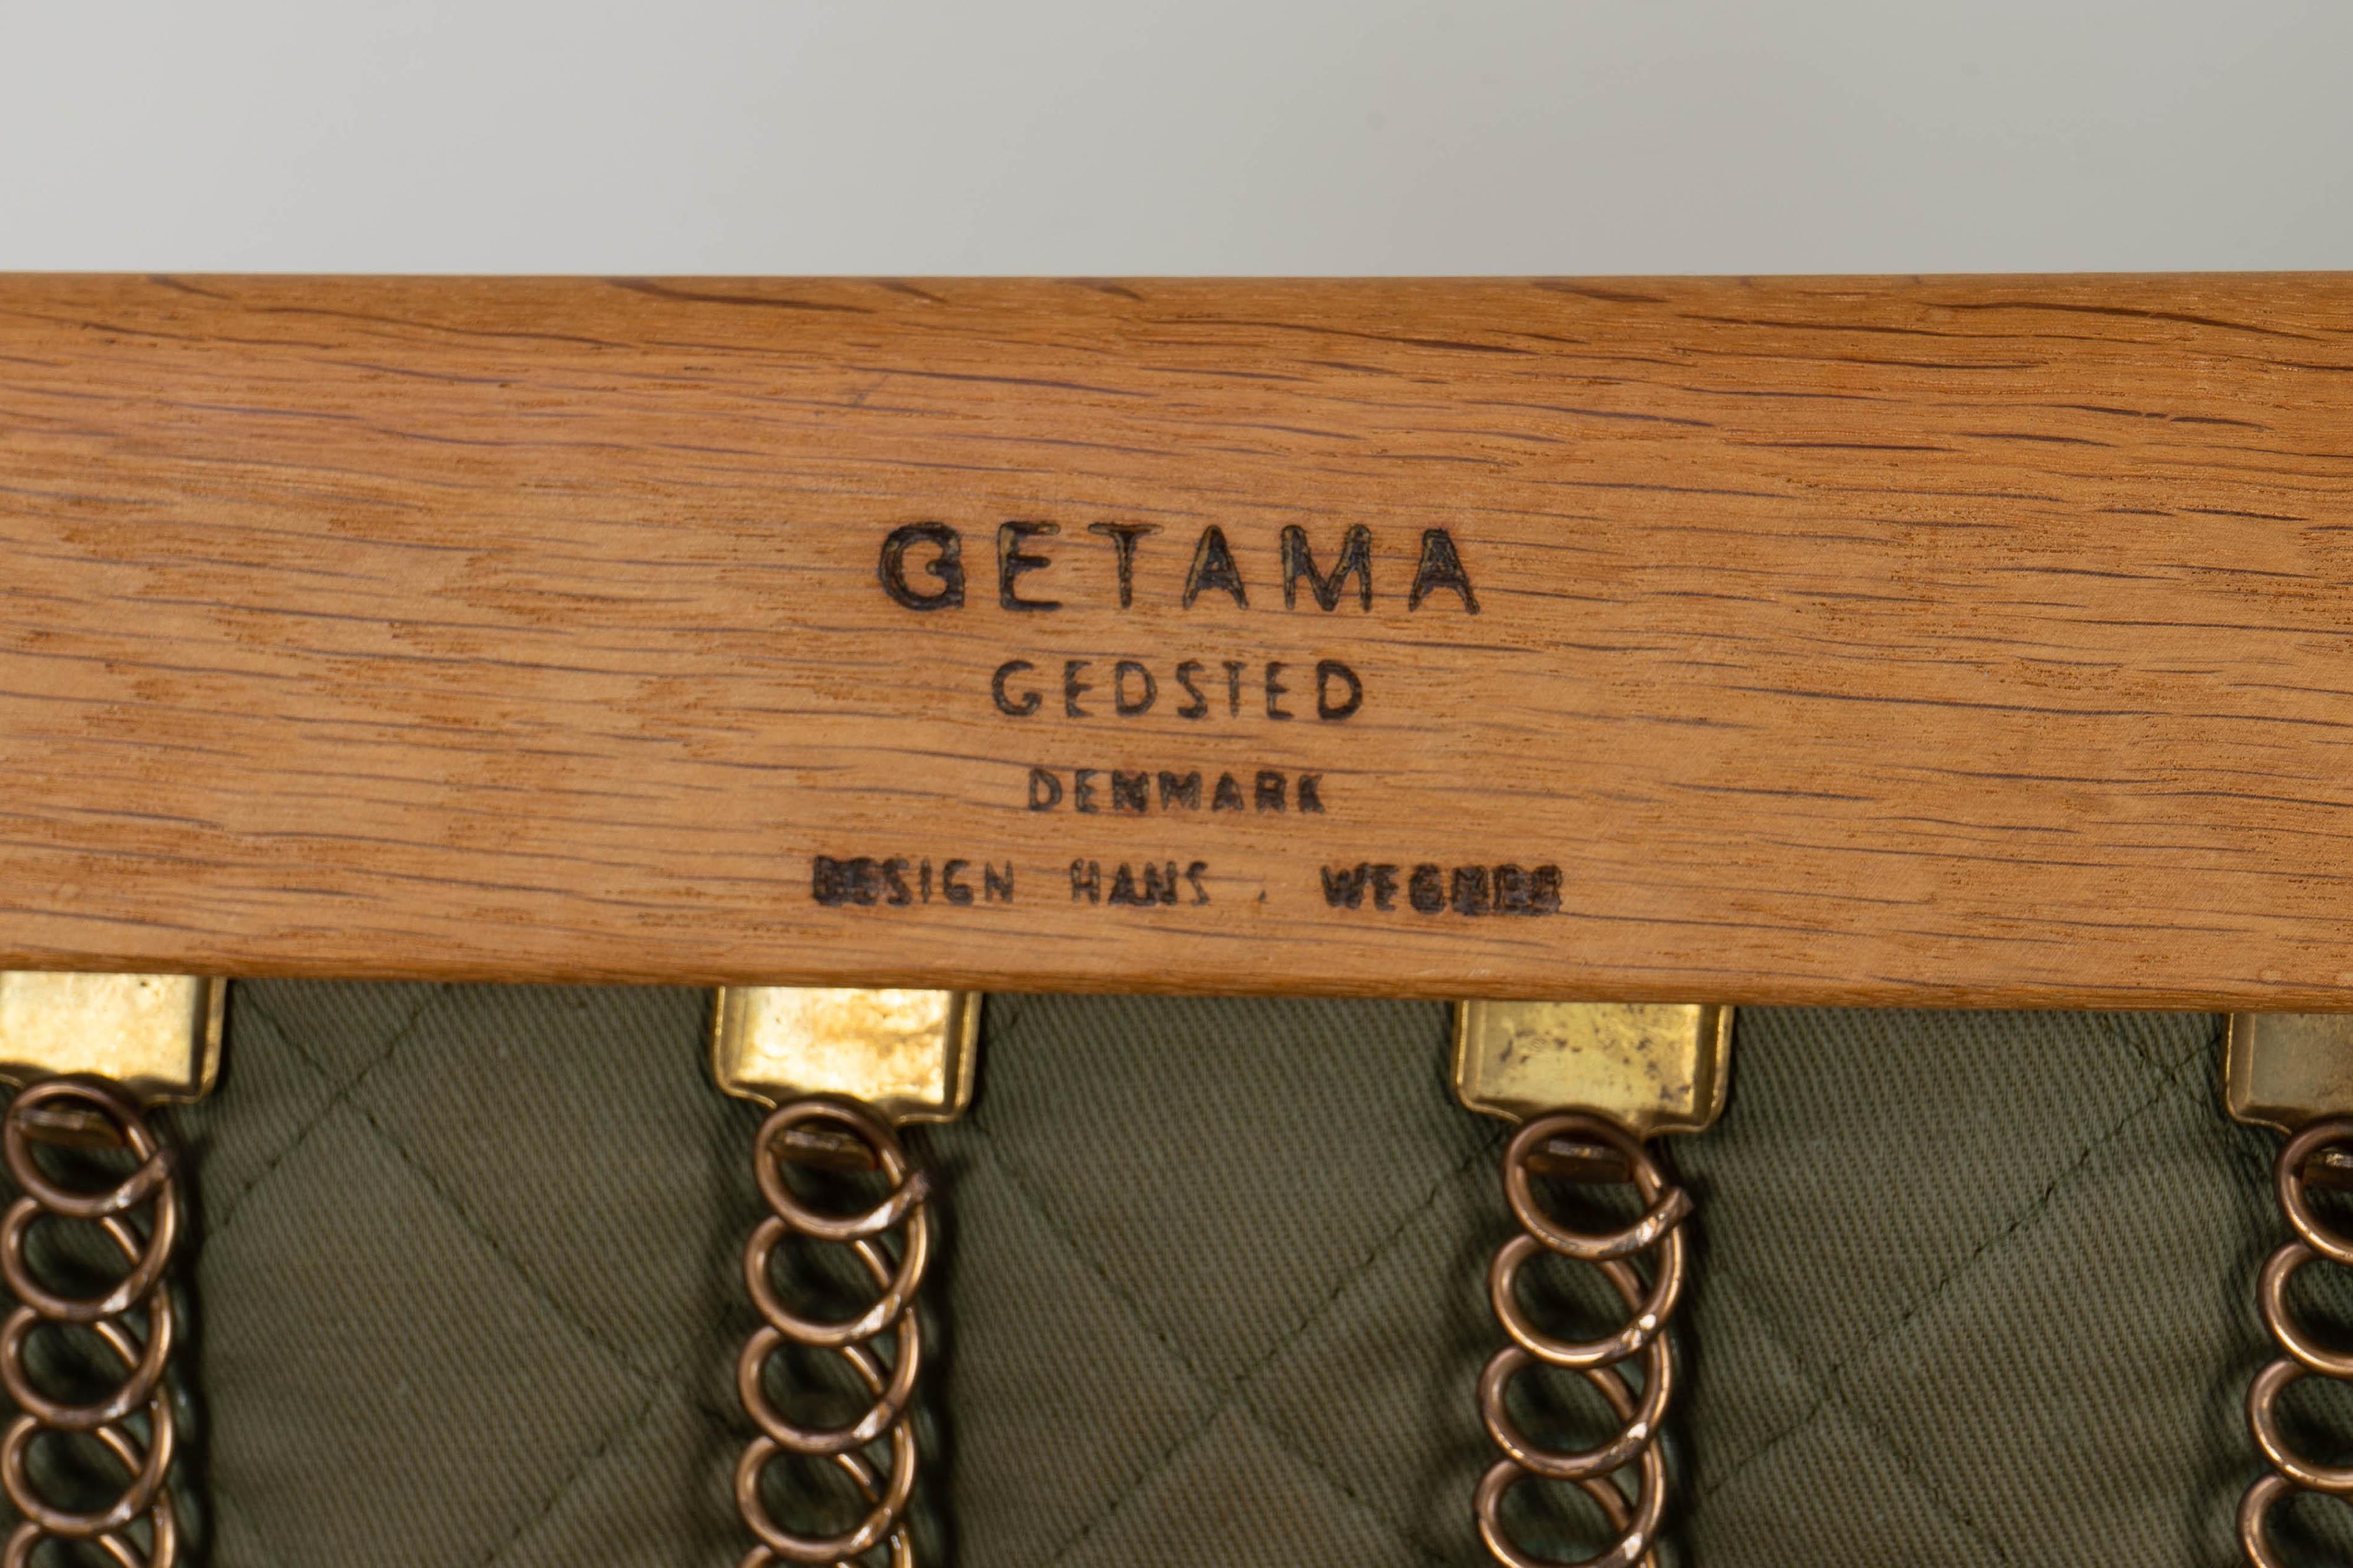 Pair of Easy Chairs by Hans Wegner GETAMA GE 290, Oak Wood Denmark 1960s For Sale 6